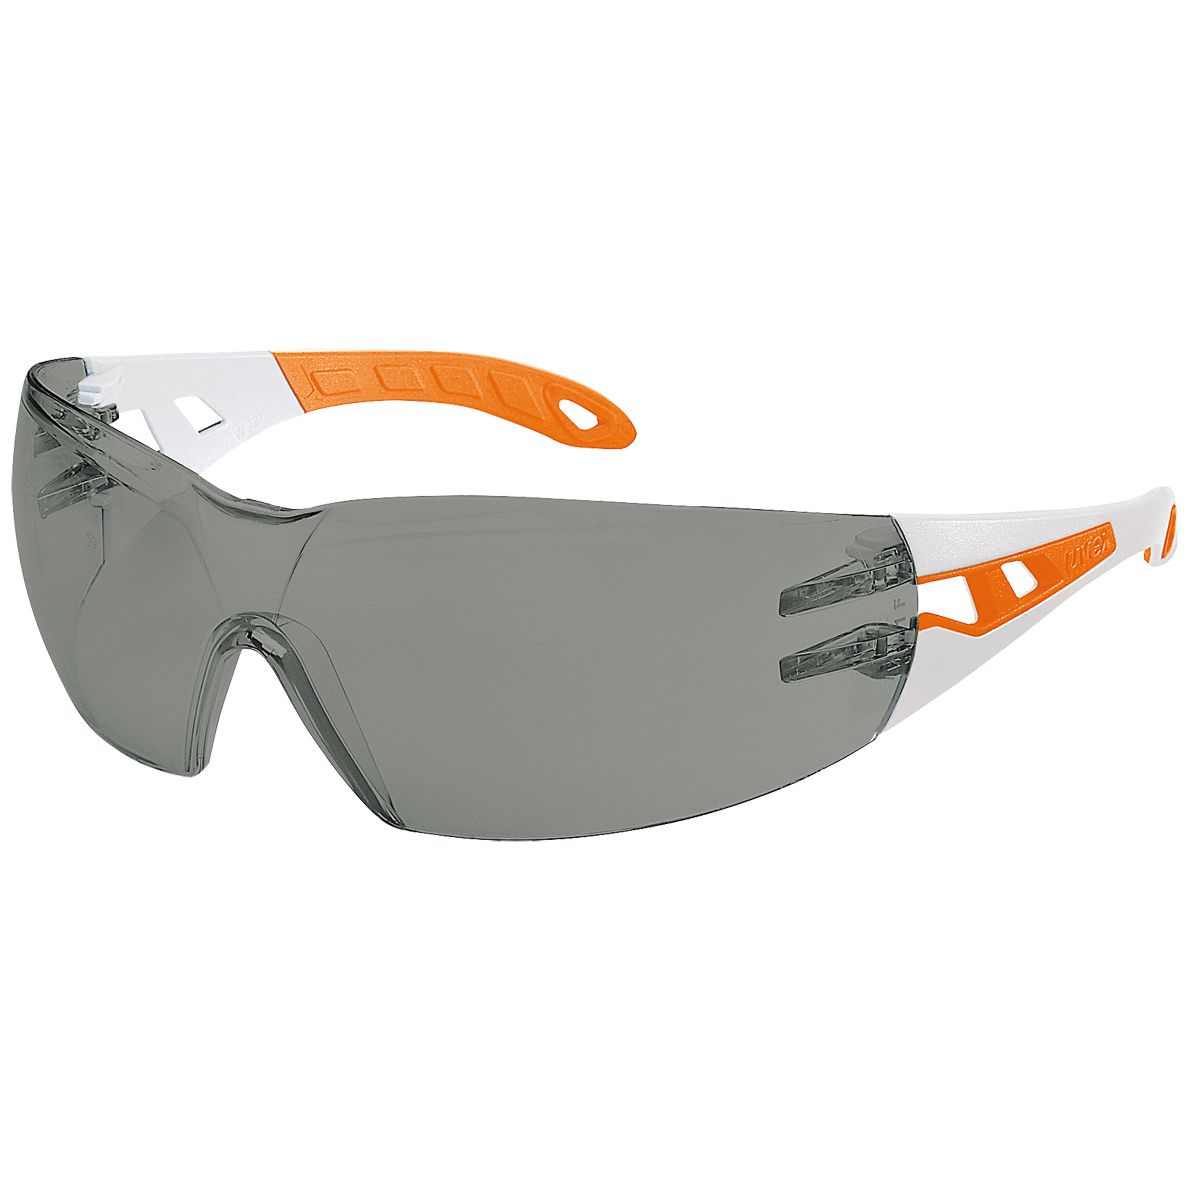 uvex pheos supravision excellence Arbeitsbrille - EN 166 & 172 - Orange-Weiß/Getönt